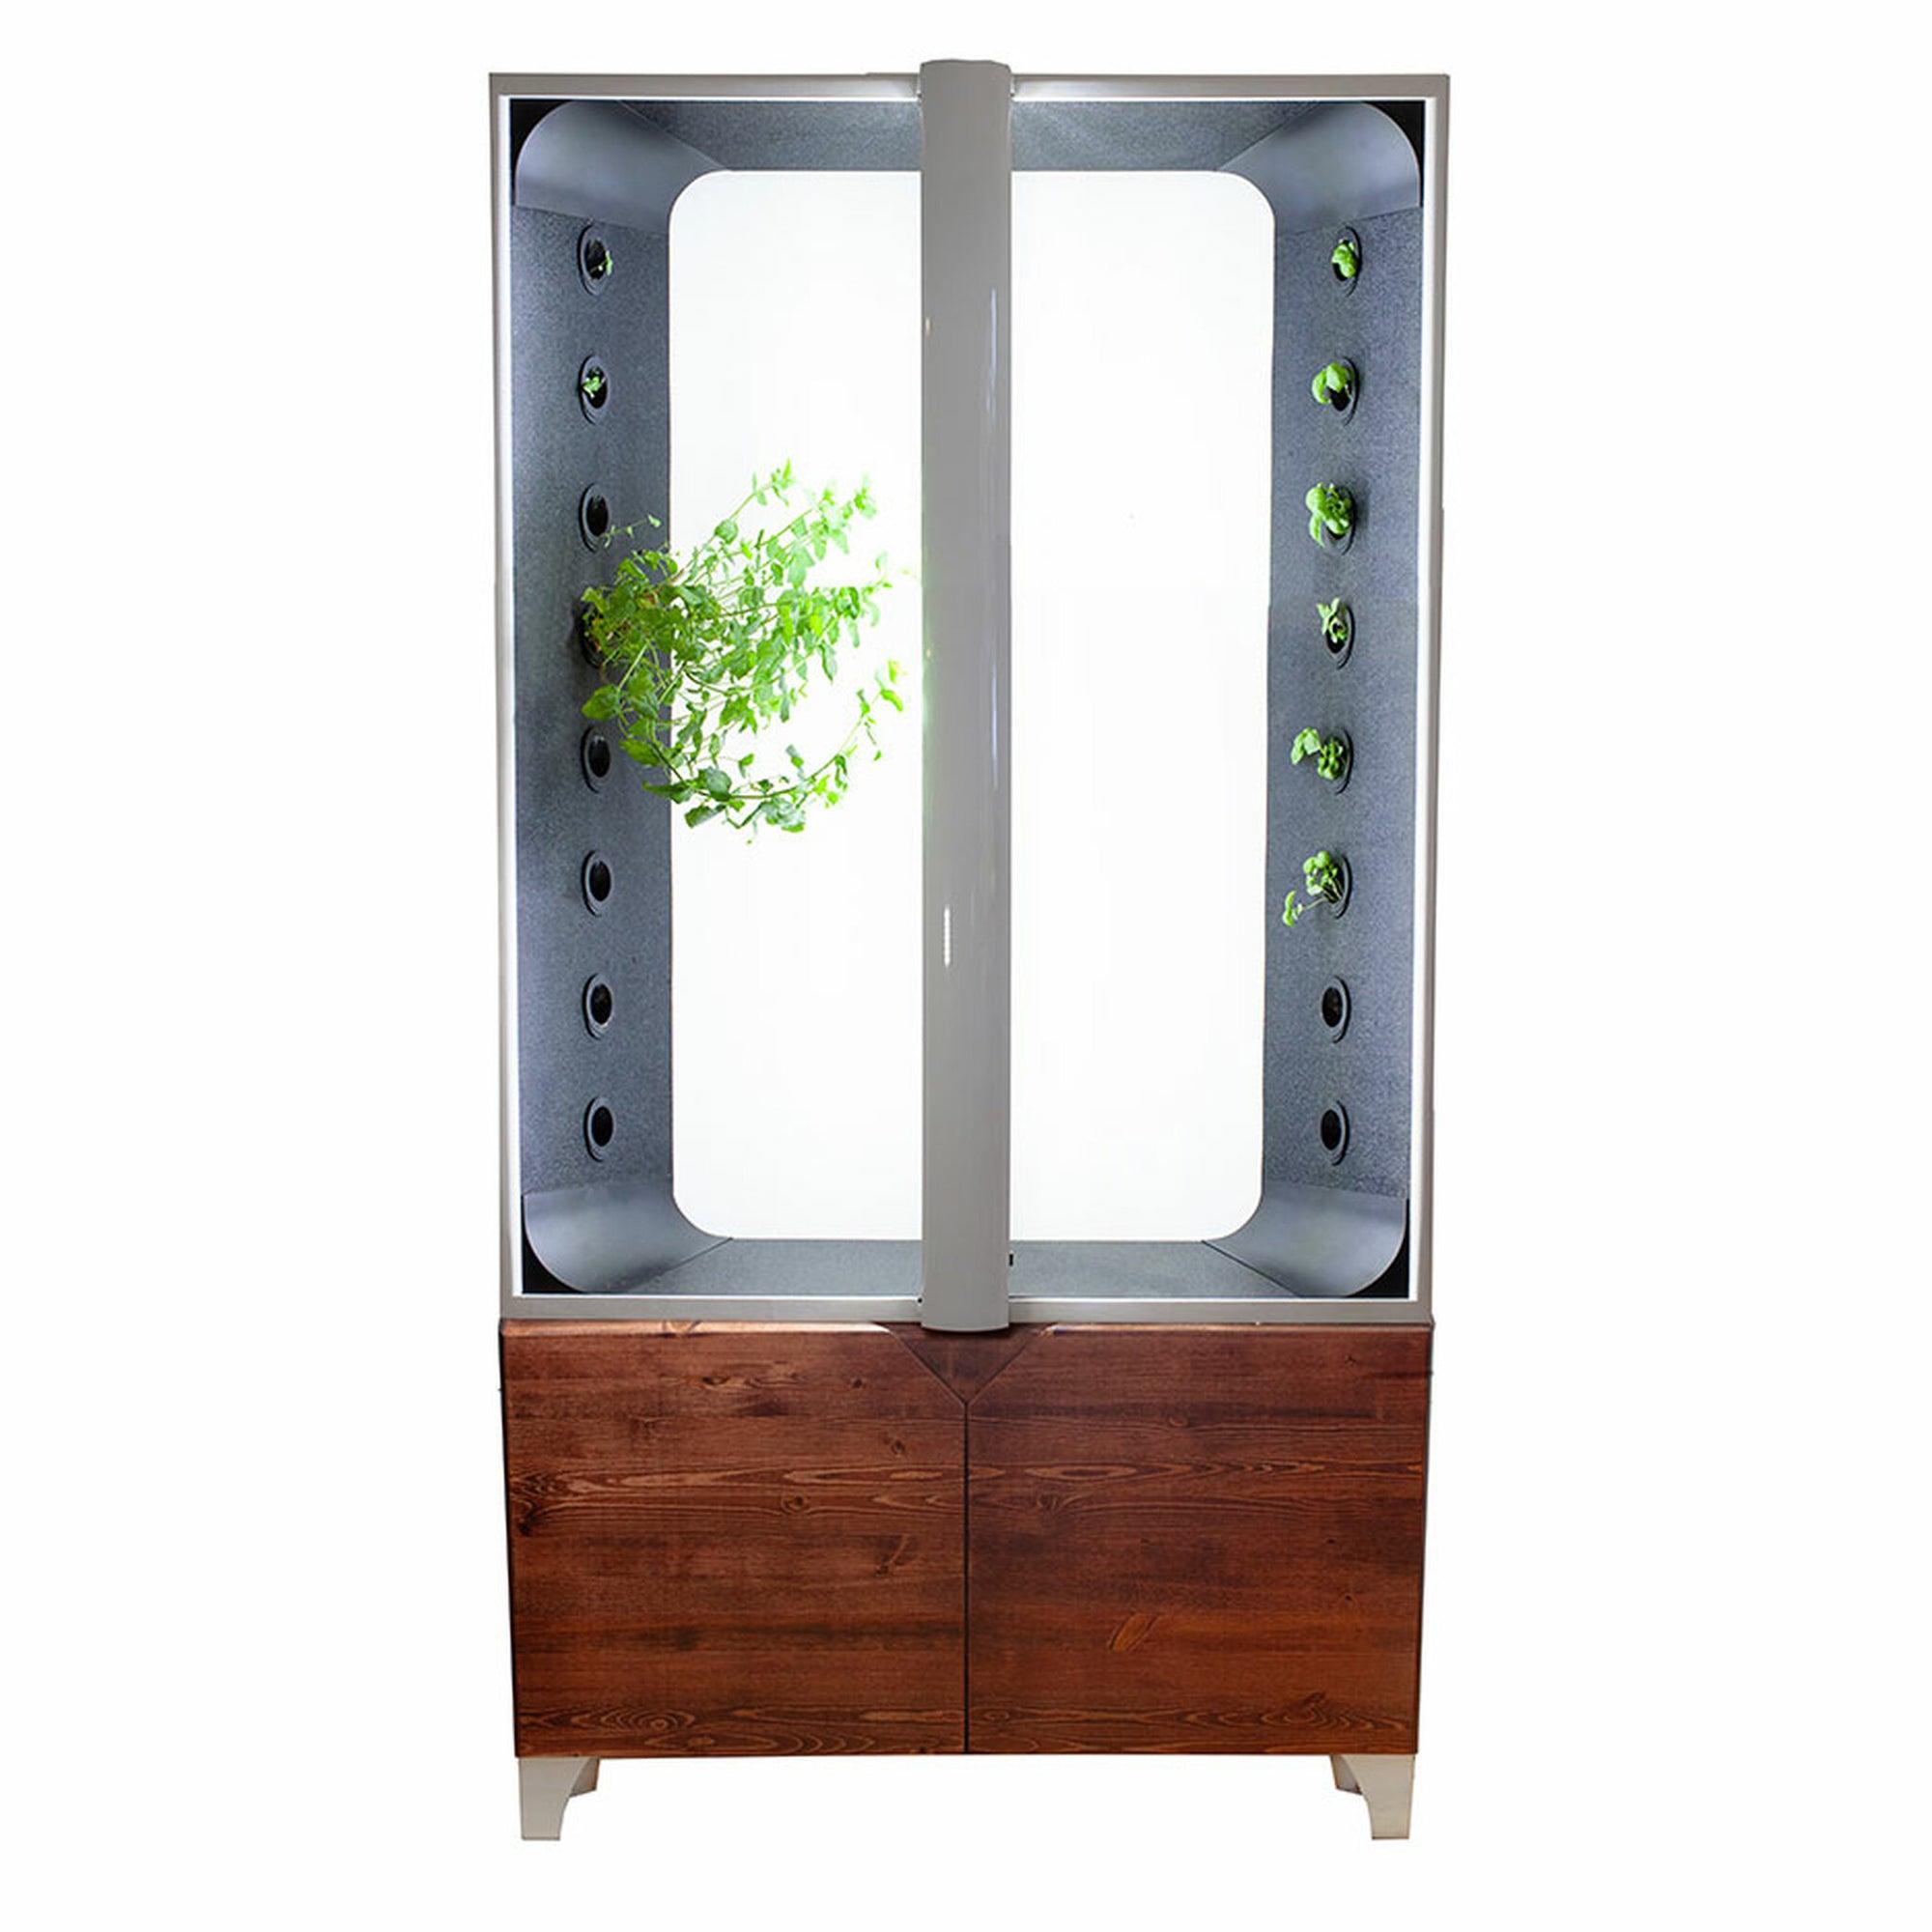 Just Vertical the Aeva indoor hydroponic garden 